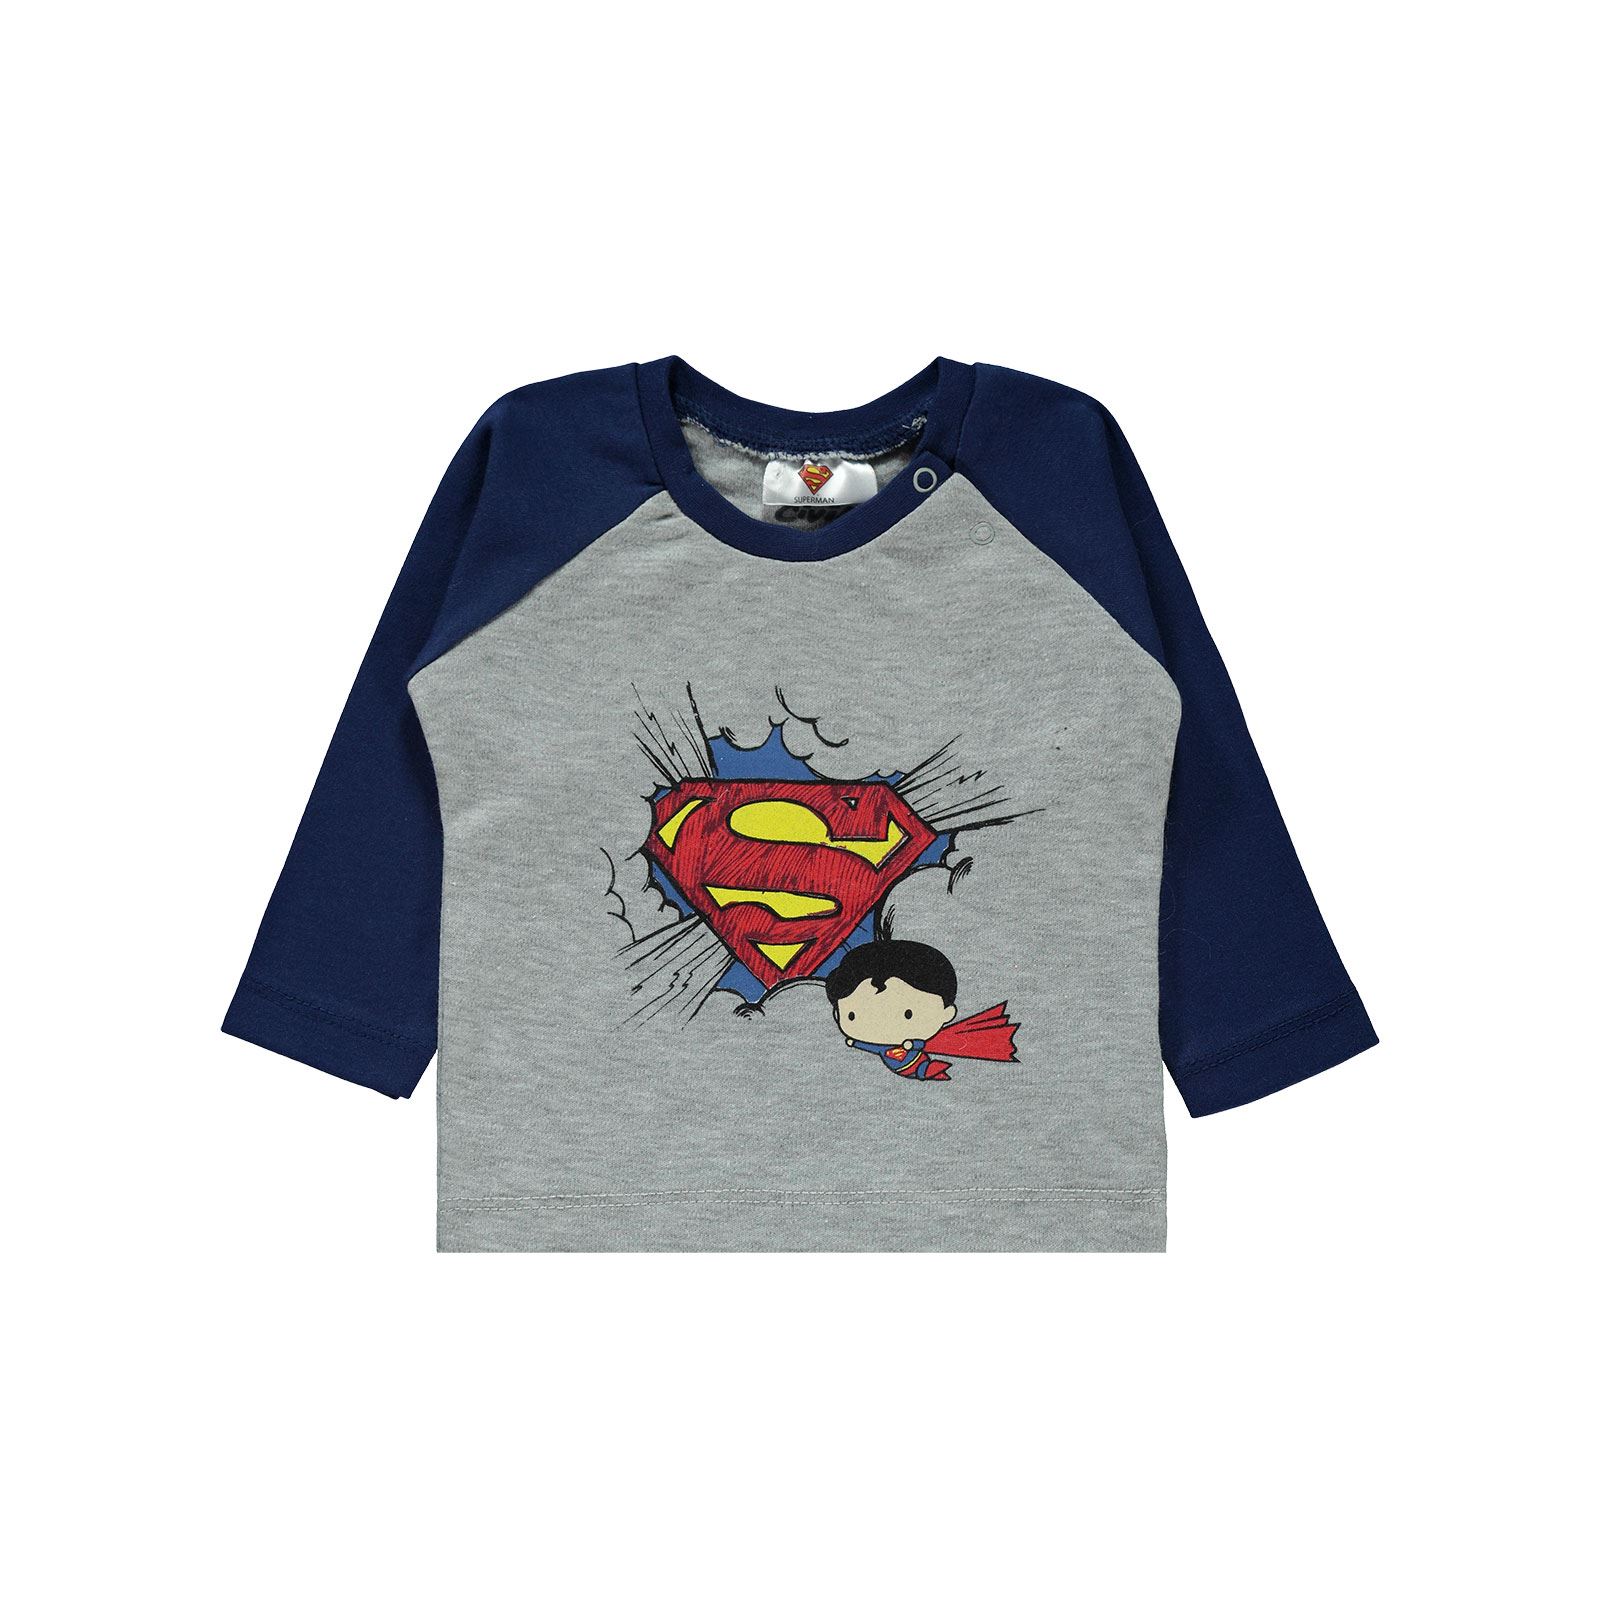 Superman Erkek Bebek Pijama Takımı 3-12 Ay Lacivert